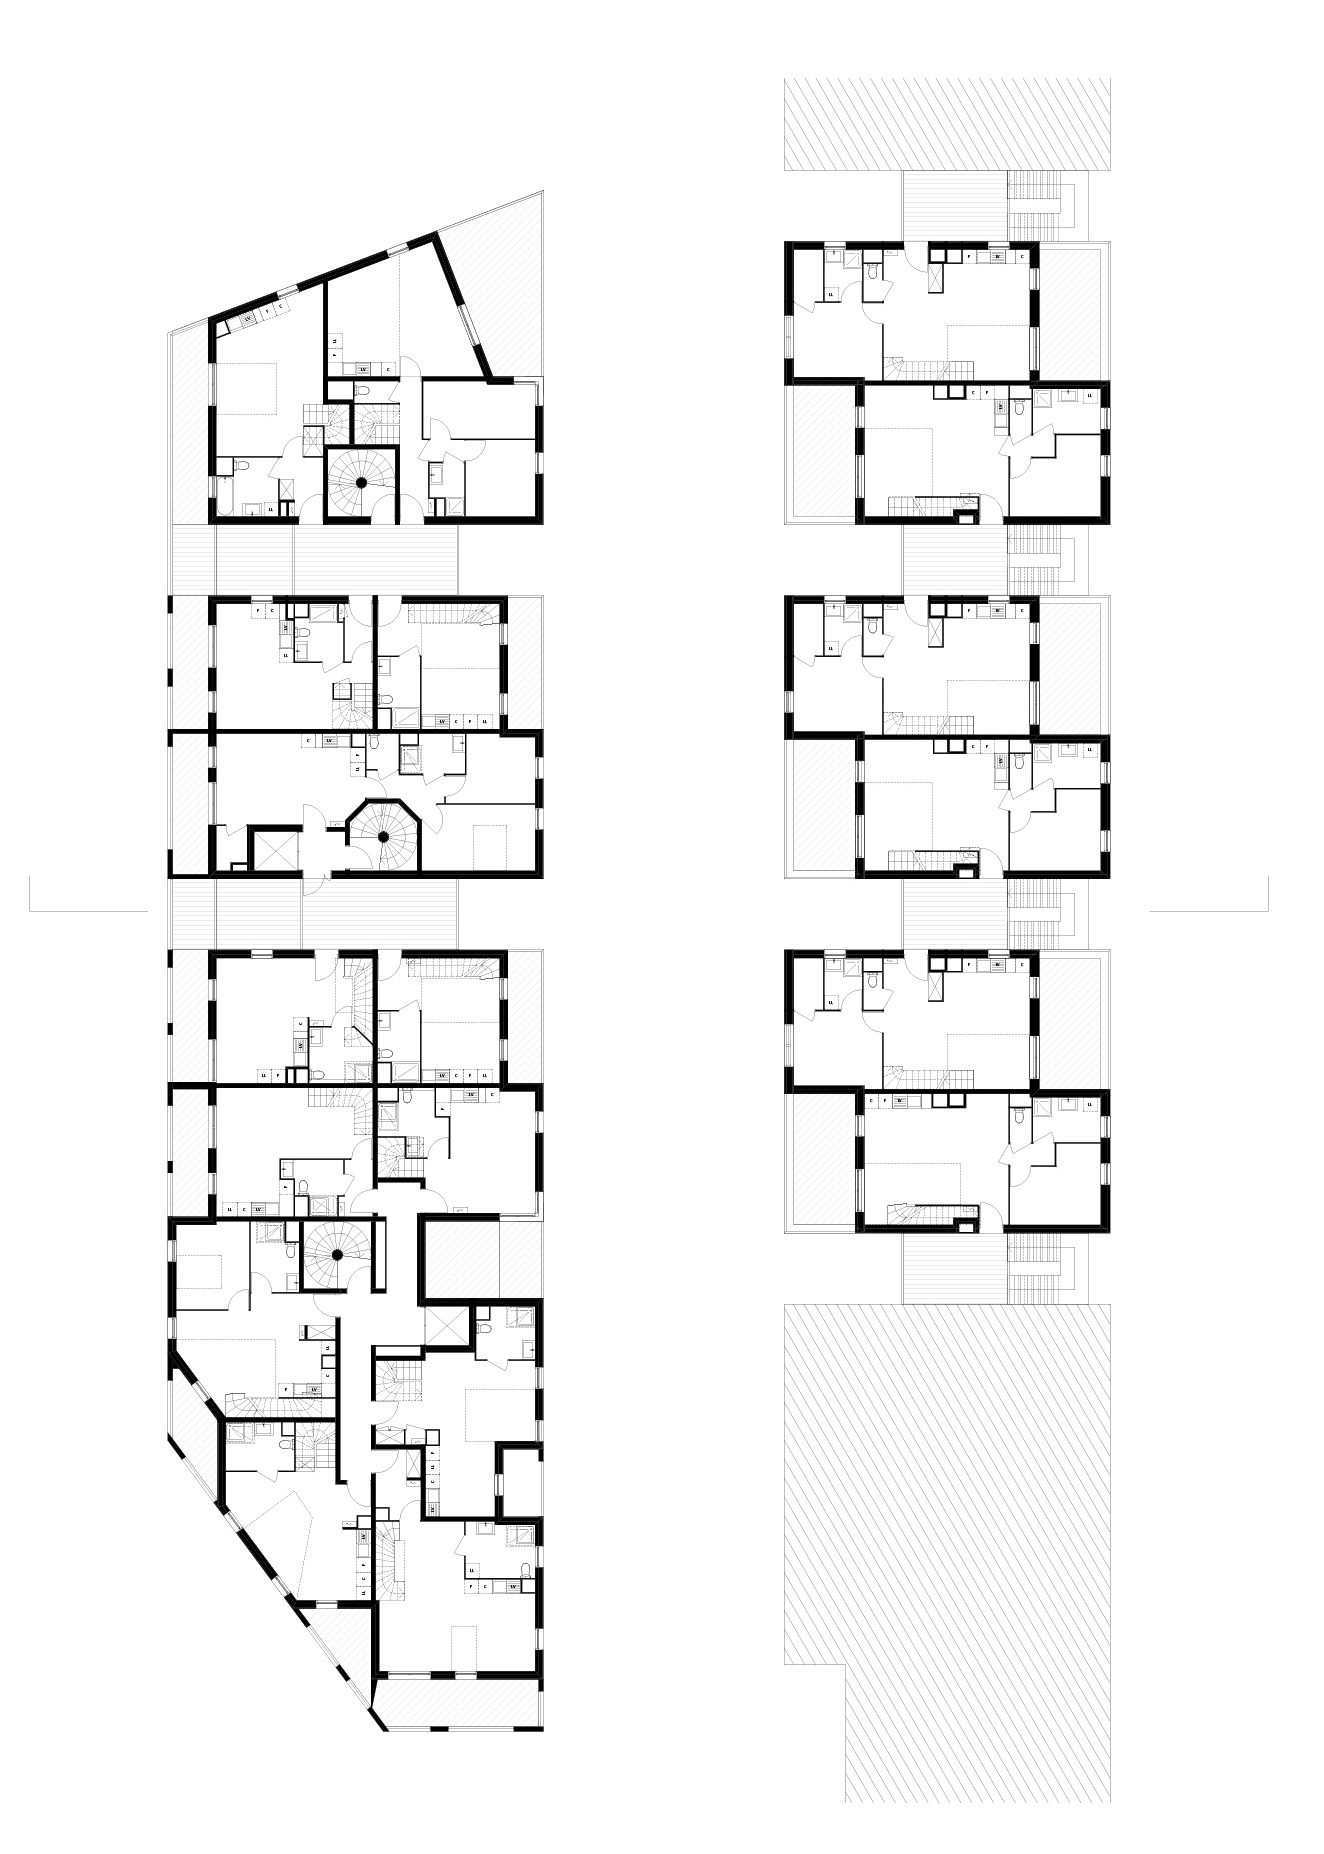 58 logements collectifs et intermédiaires à Montreuil (chantier) - Plan d'étage courant